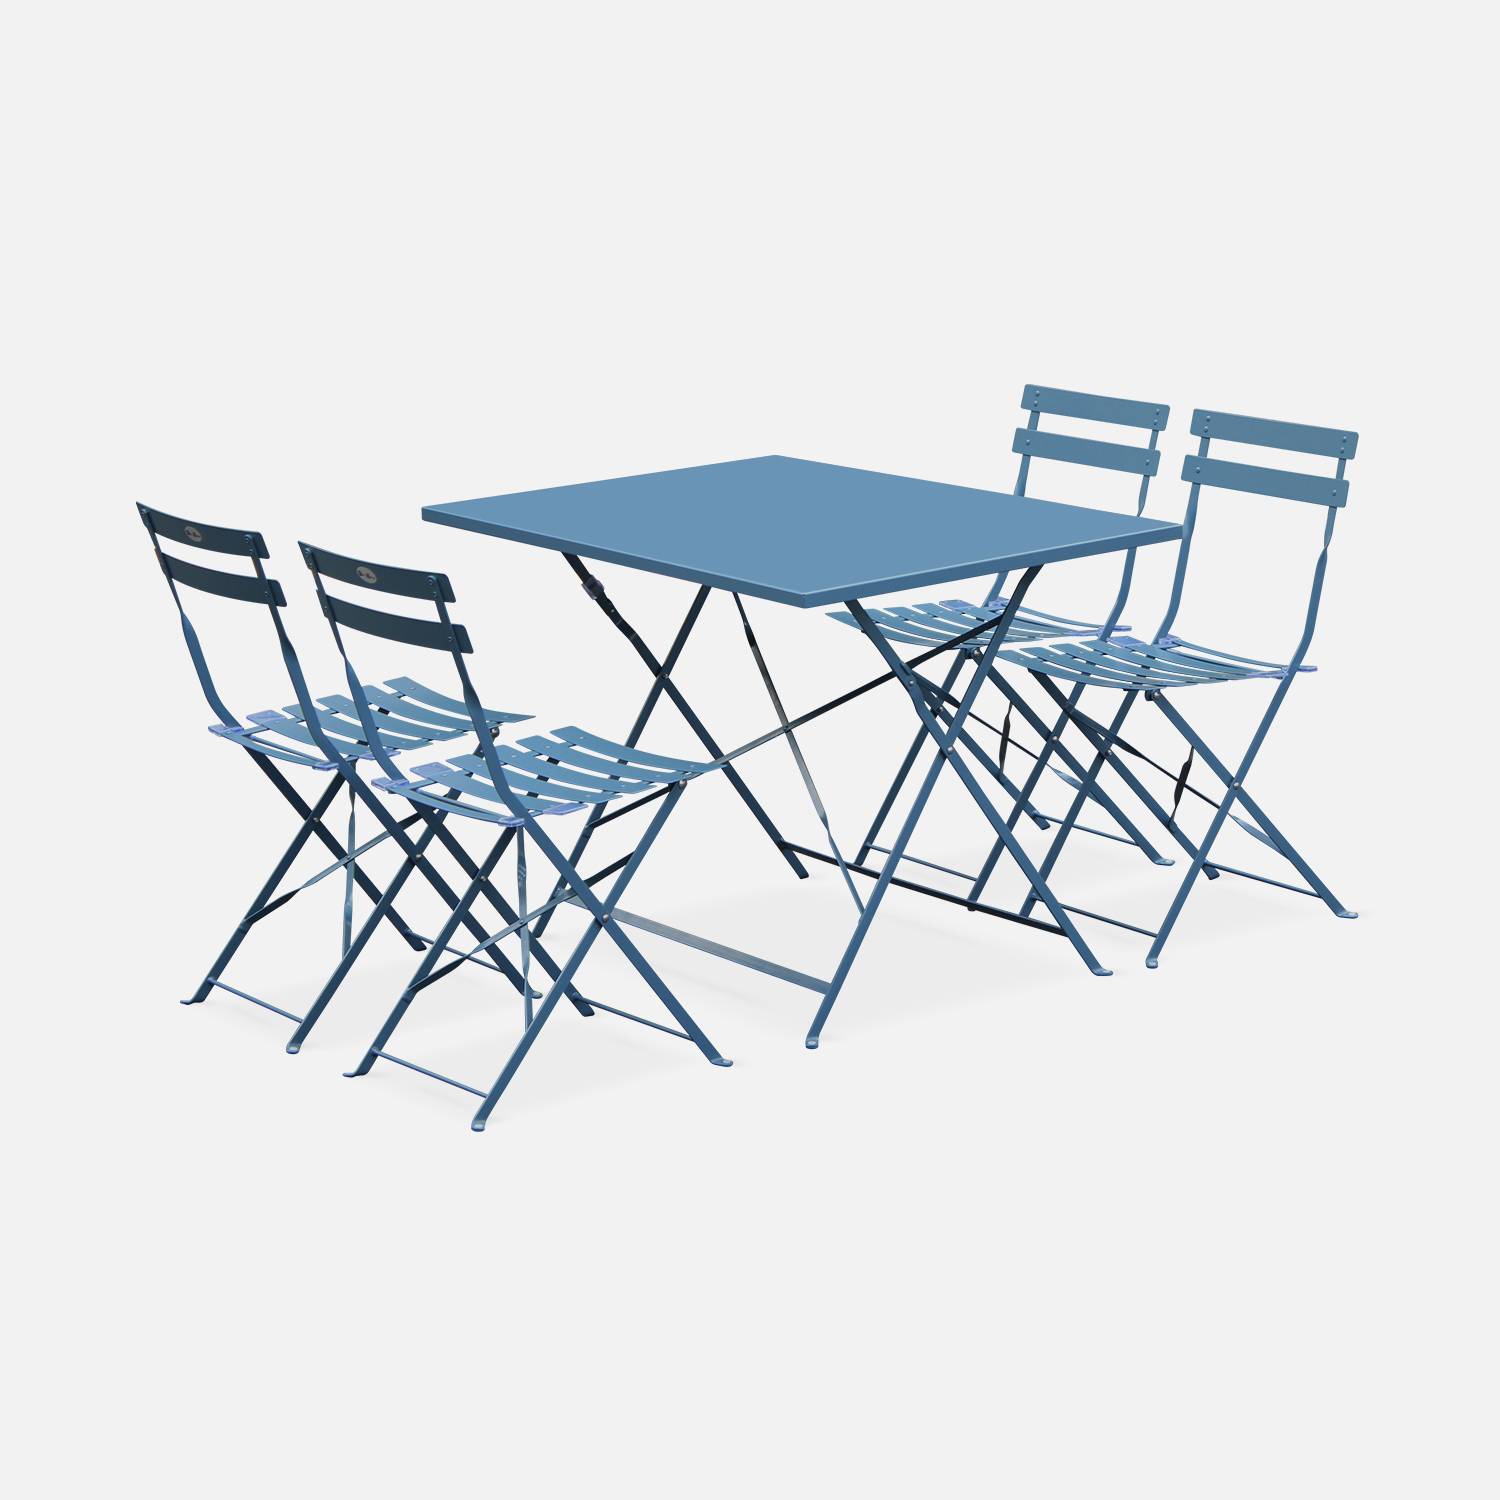 Mobiliário de jardim dobrável para bistrô - Emilia rectangular azul cinza - Mesa 110x70 cm com quatro cadeiras dobráveis, aço revestido a pó Photo2